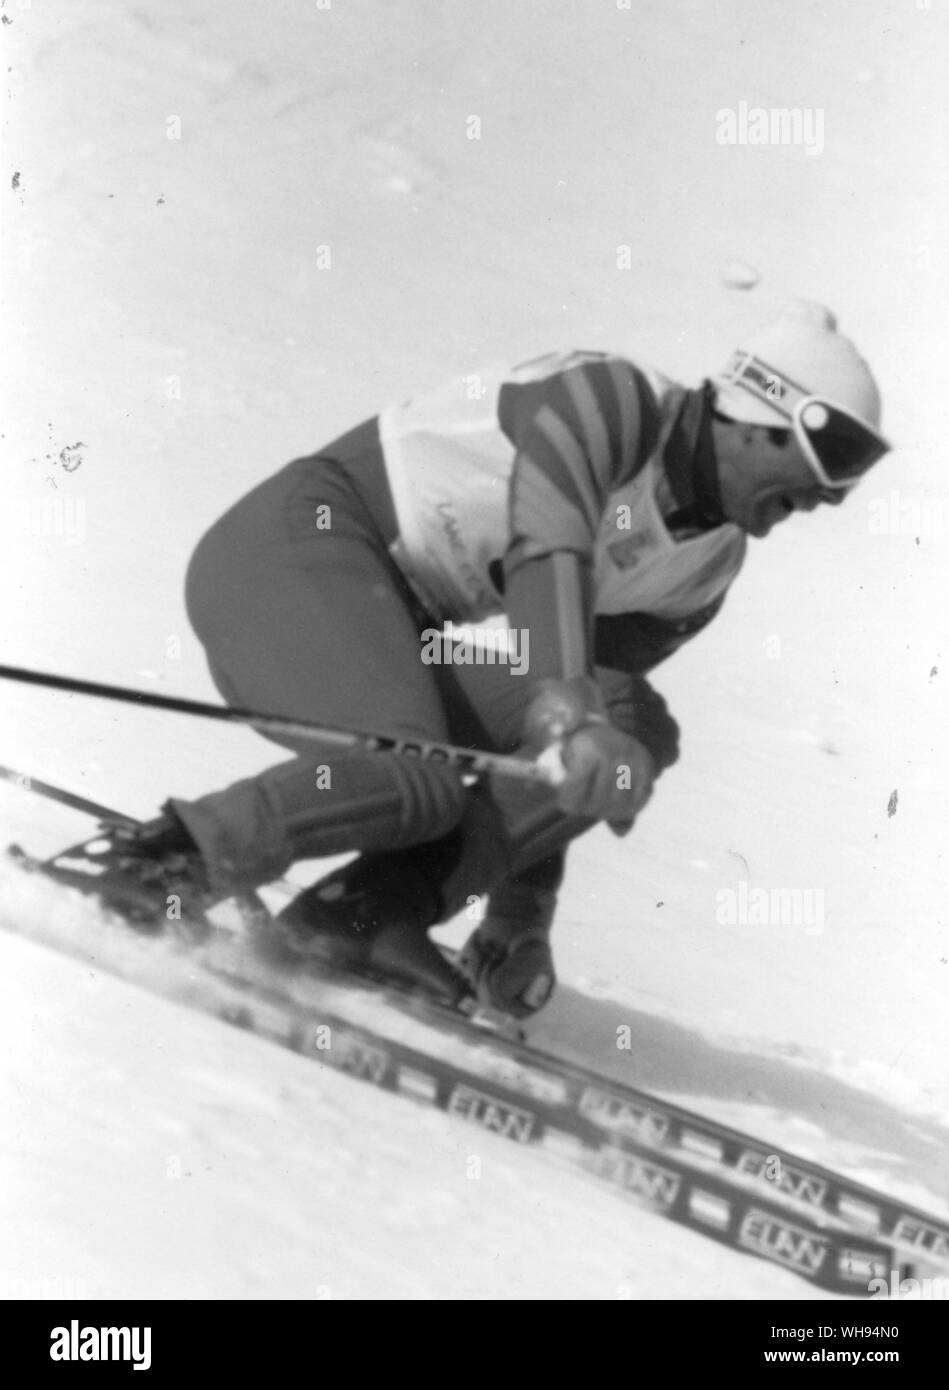 1980 Winter Olympics - Lake Placid, USA. Ingemar Stenmark in der mens alpine Riesenslalom Ski event gewinnen Goldmedaille für Schweden. 19. Februar 1980. Stockfoto